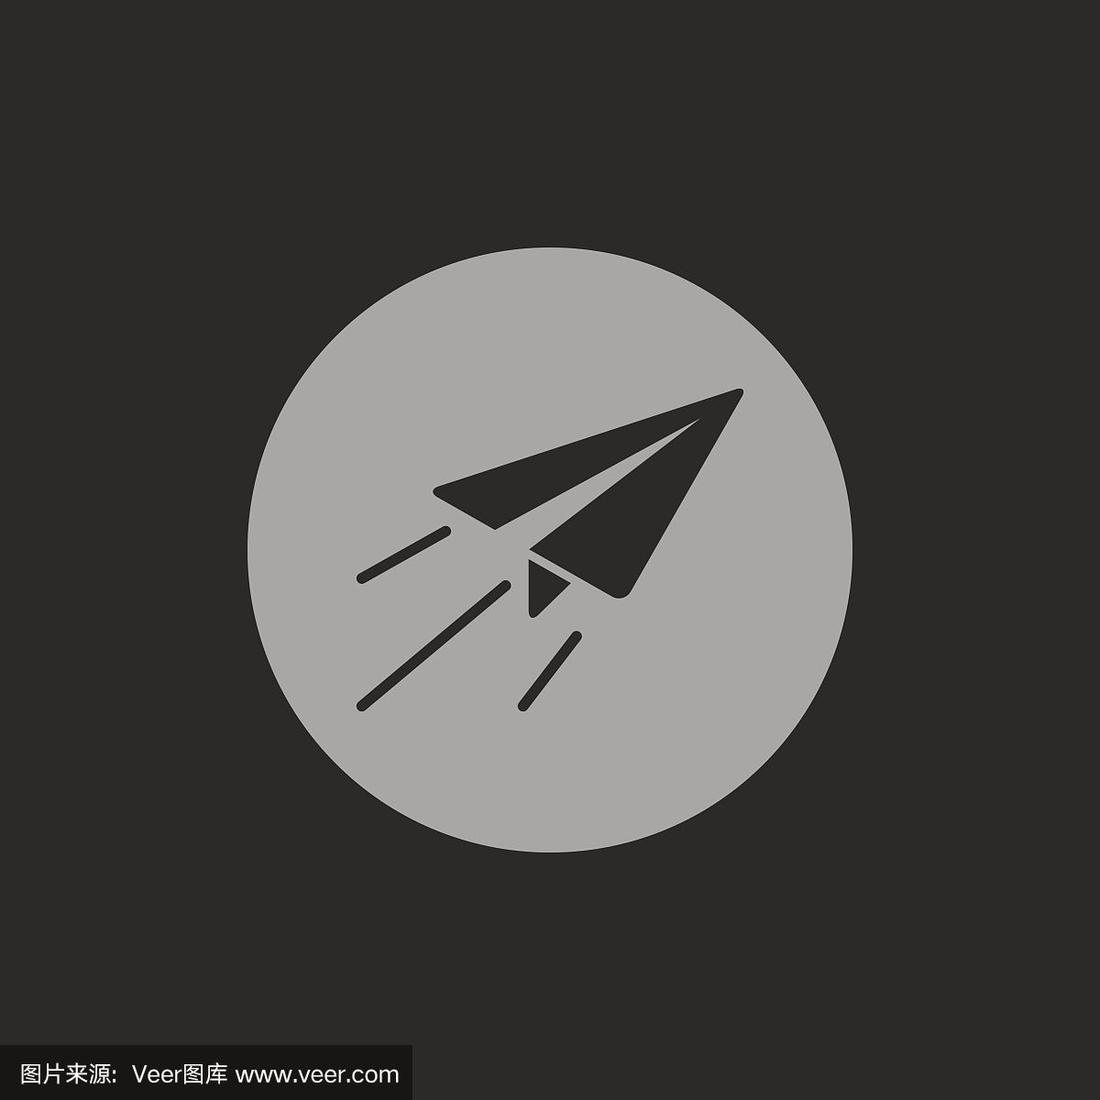 [纸飞机logo的帽子]纸飞机标志的衣服是什么牌子